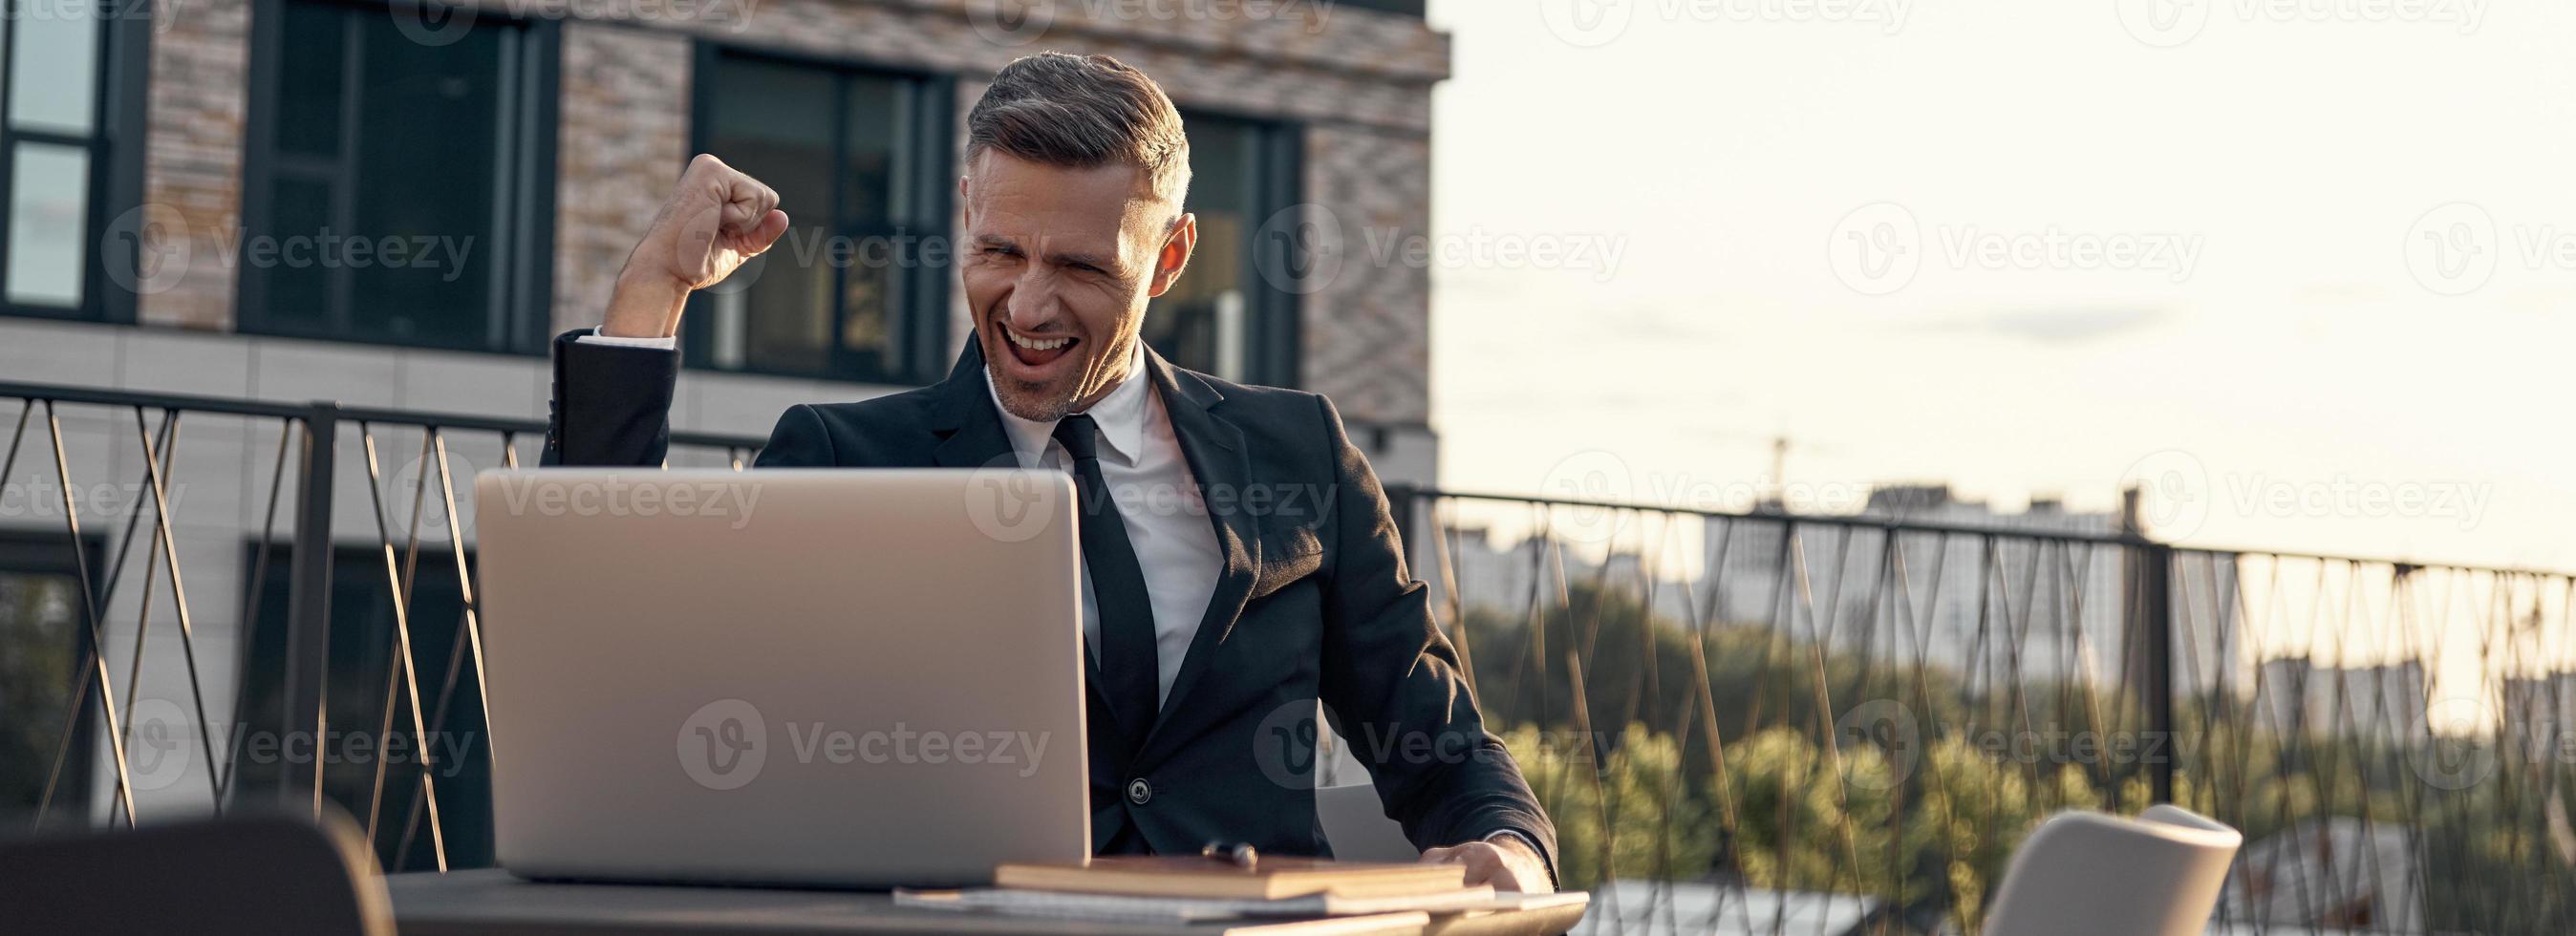 empresário maduro alegre tendo chamada de vídeo no laptop enquanto está sentado no café ao ar livre foto